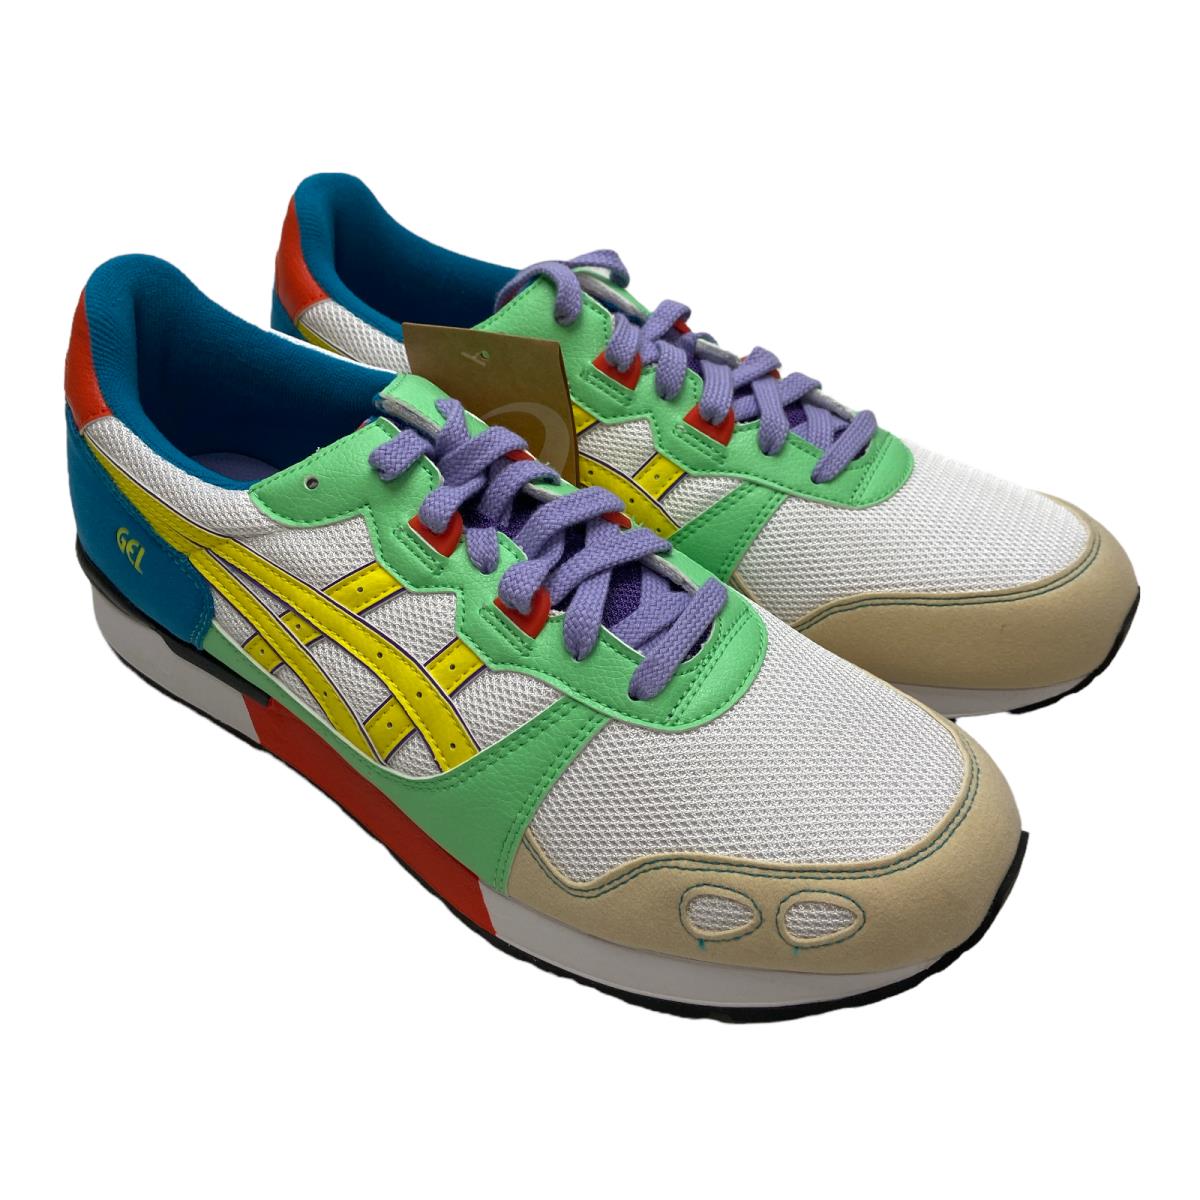 Asics Gel-lyte 1 Lace Up Sneaker Shoe Size Men`s 11.5 S5